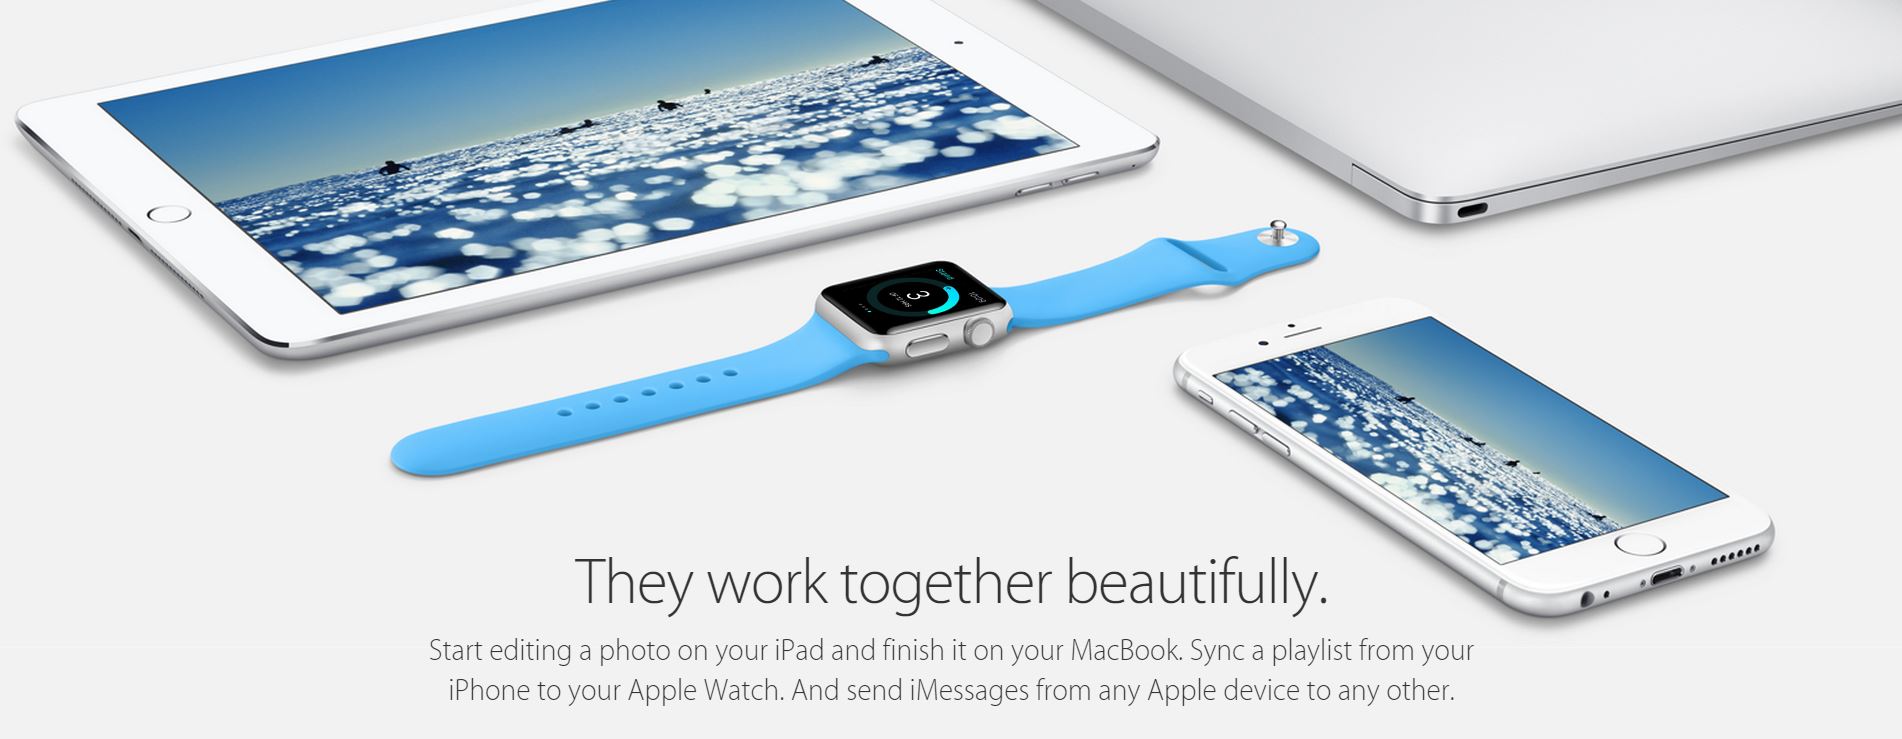 Apple Watch conectado iPhone Mac